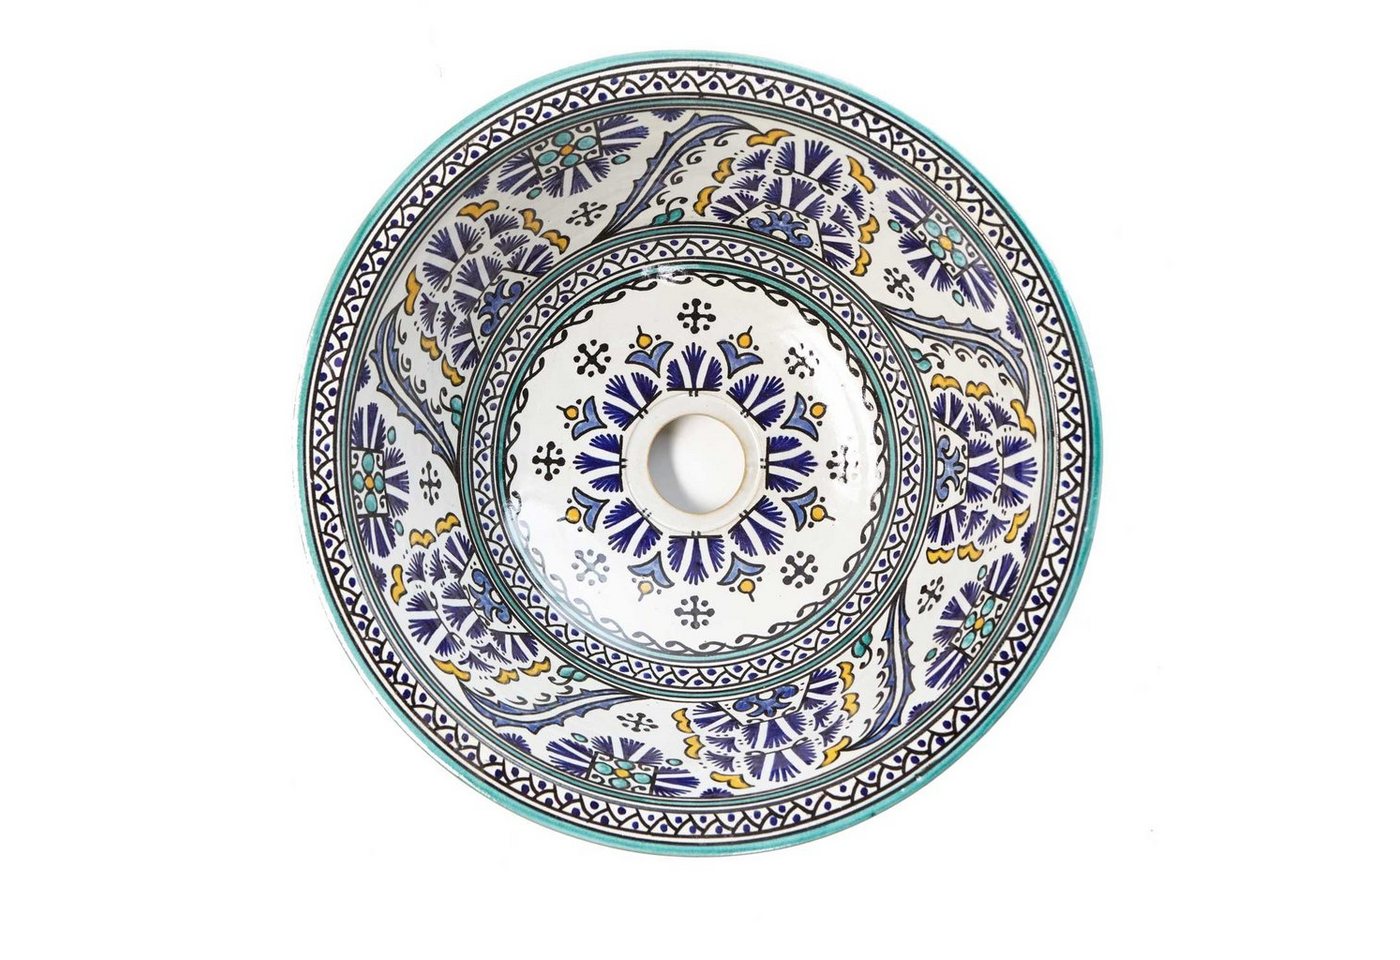 Casa Moro Waschbecken Marokkanisches Keramik-Waschbecken Fes88 Ø 35 cm rund bunt handbemalt (Kunsthandwerk), Marokkanisches Handwaschbecken für Küche Badezimmer, WB35288 von Casa Moro